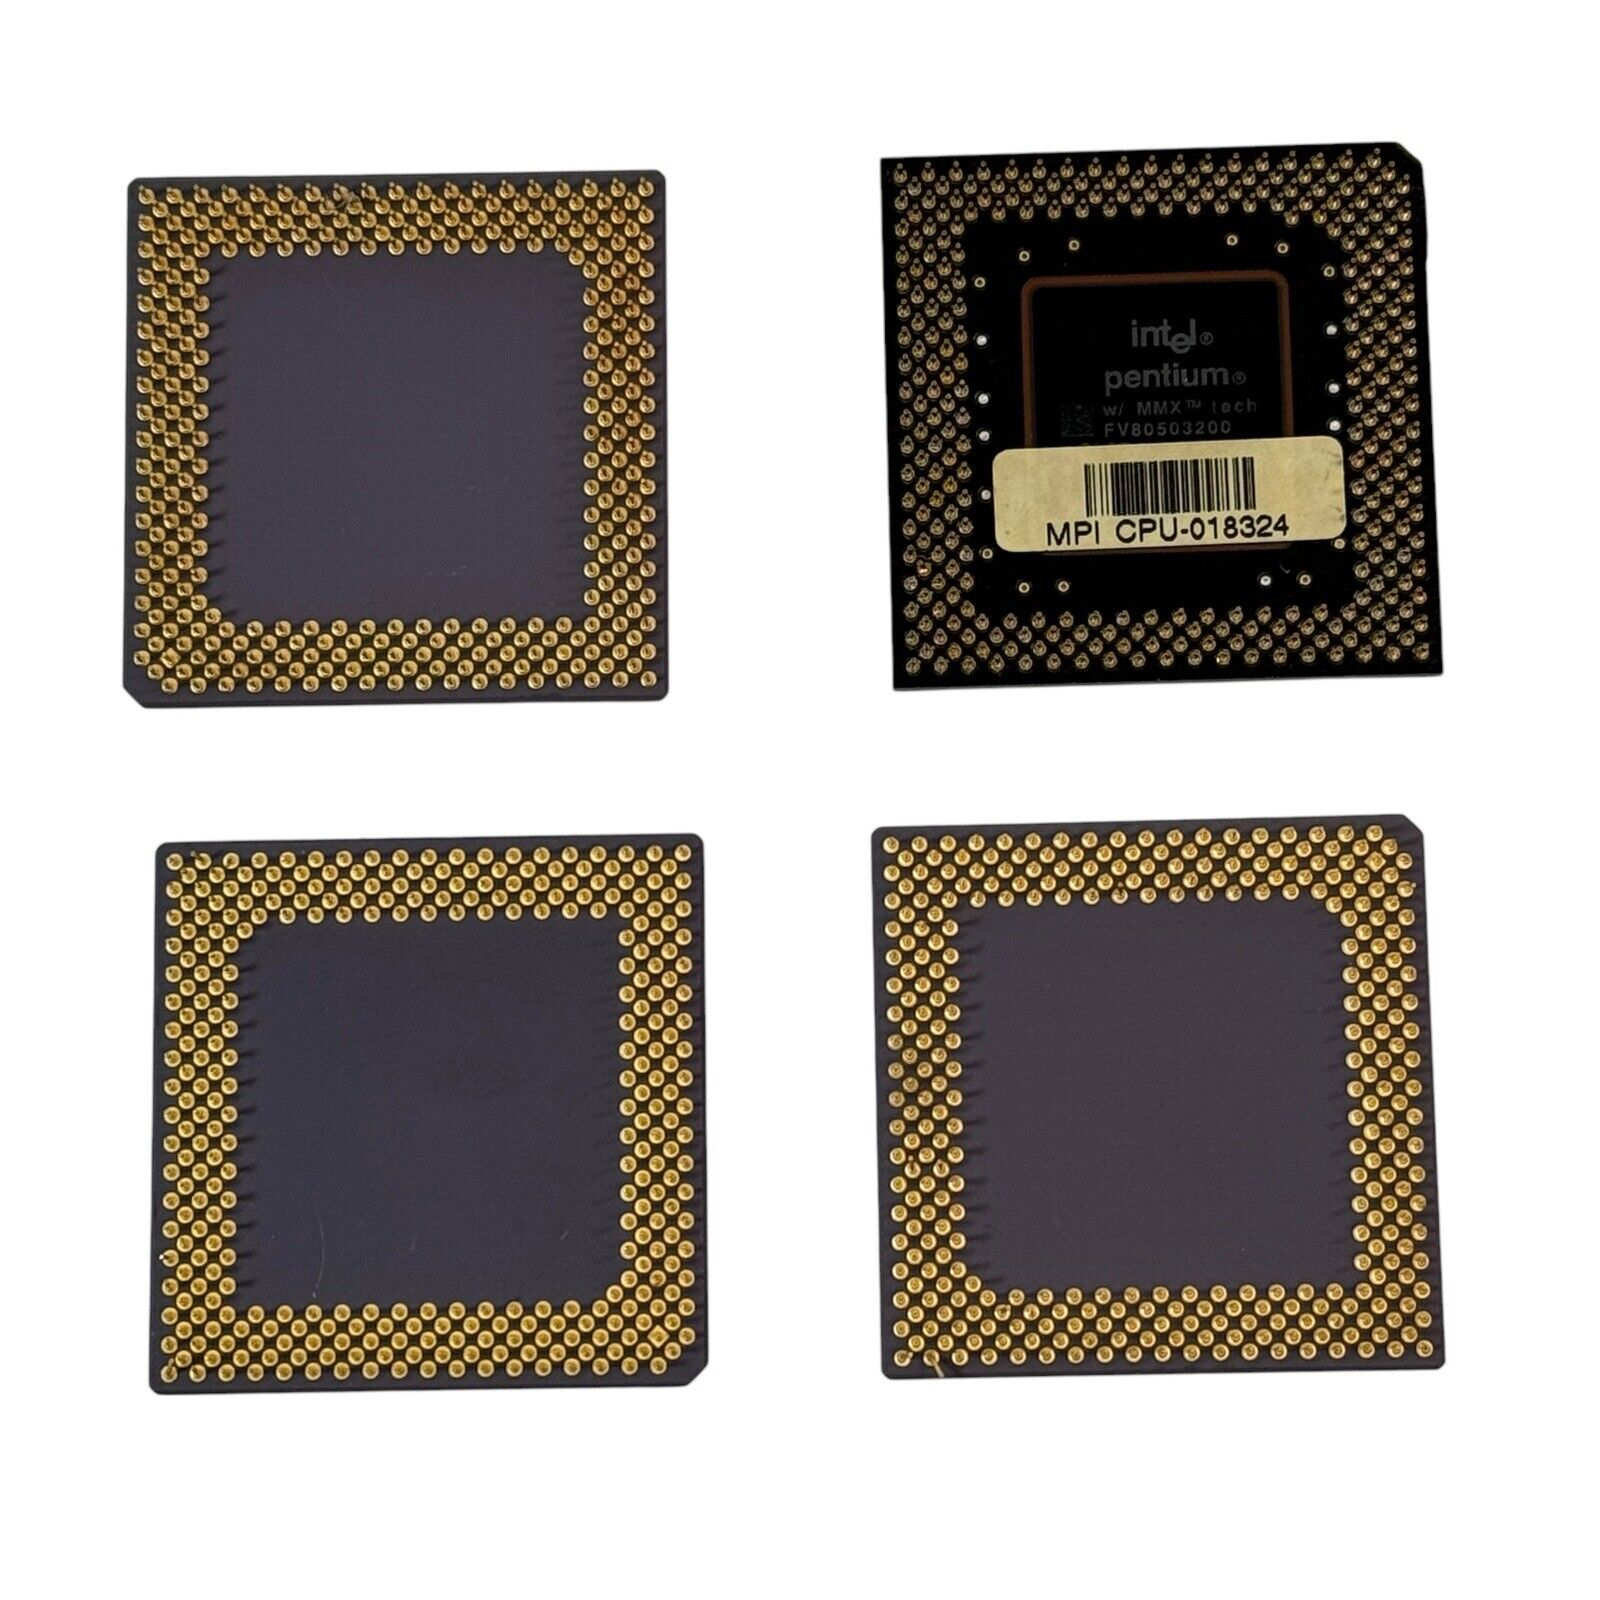 AMD-K6 333/350/450 CPU & Intel W/MMX Vintage 1990’s GOLD